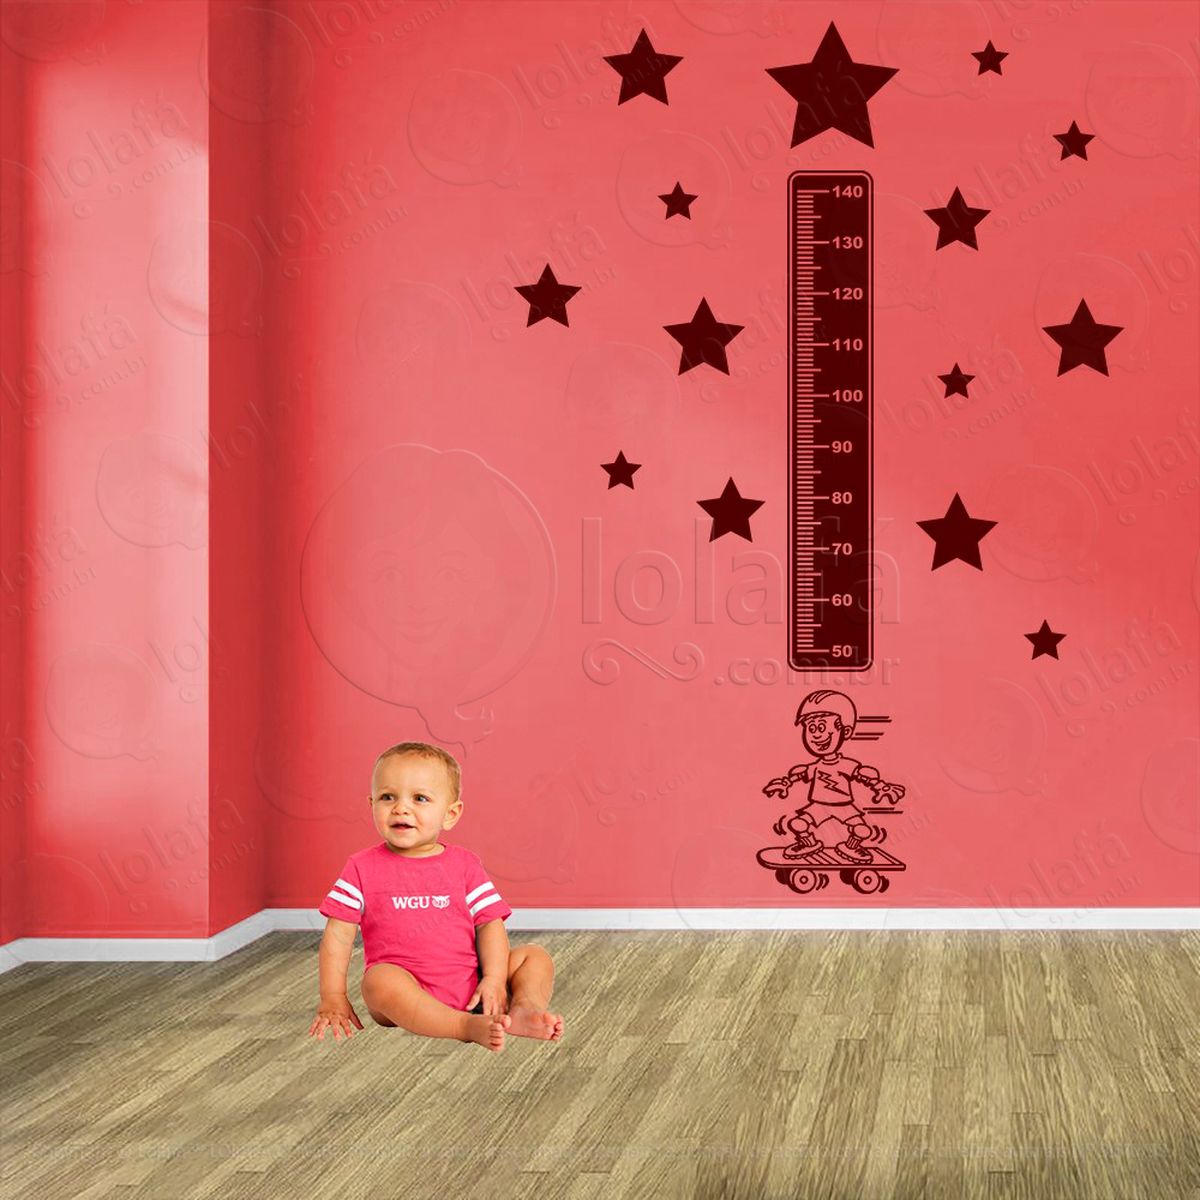 skate e estrelas adesivo régua de crescimento infantil, medidor de altura para quarto, porta e parede - mod:380